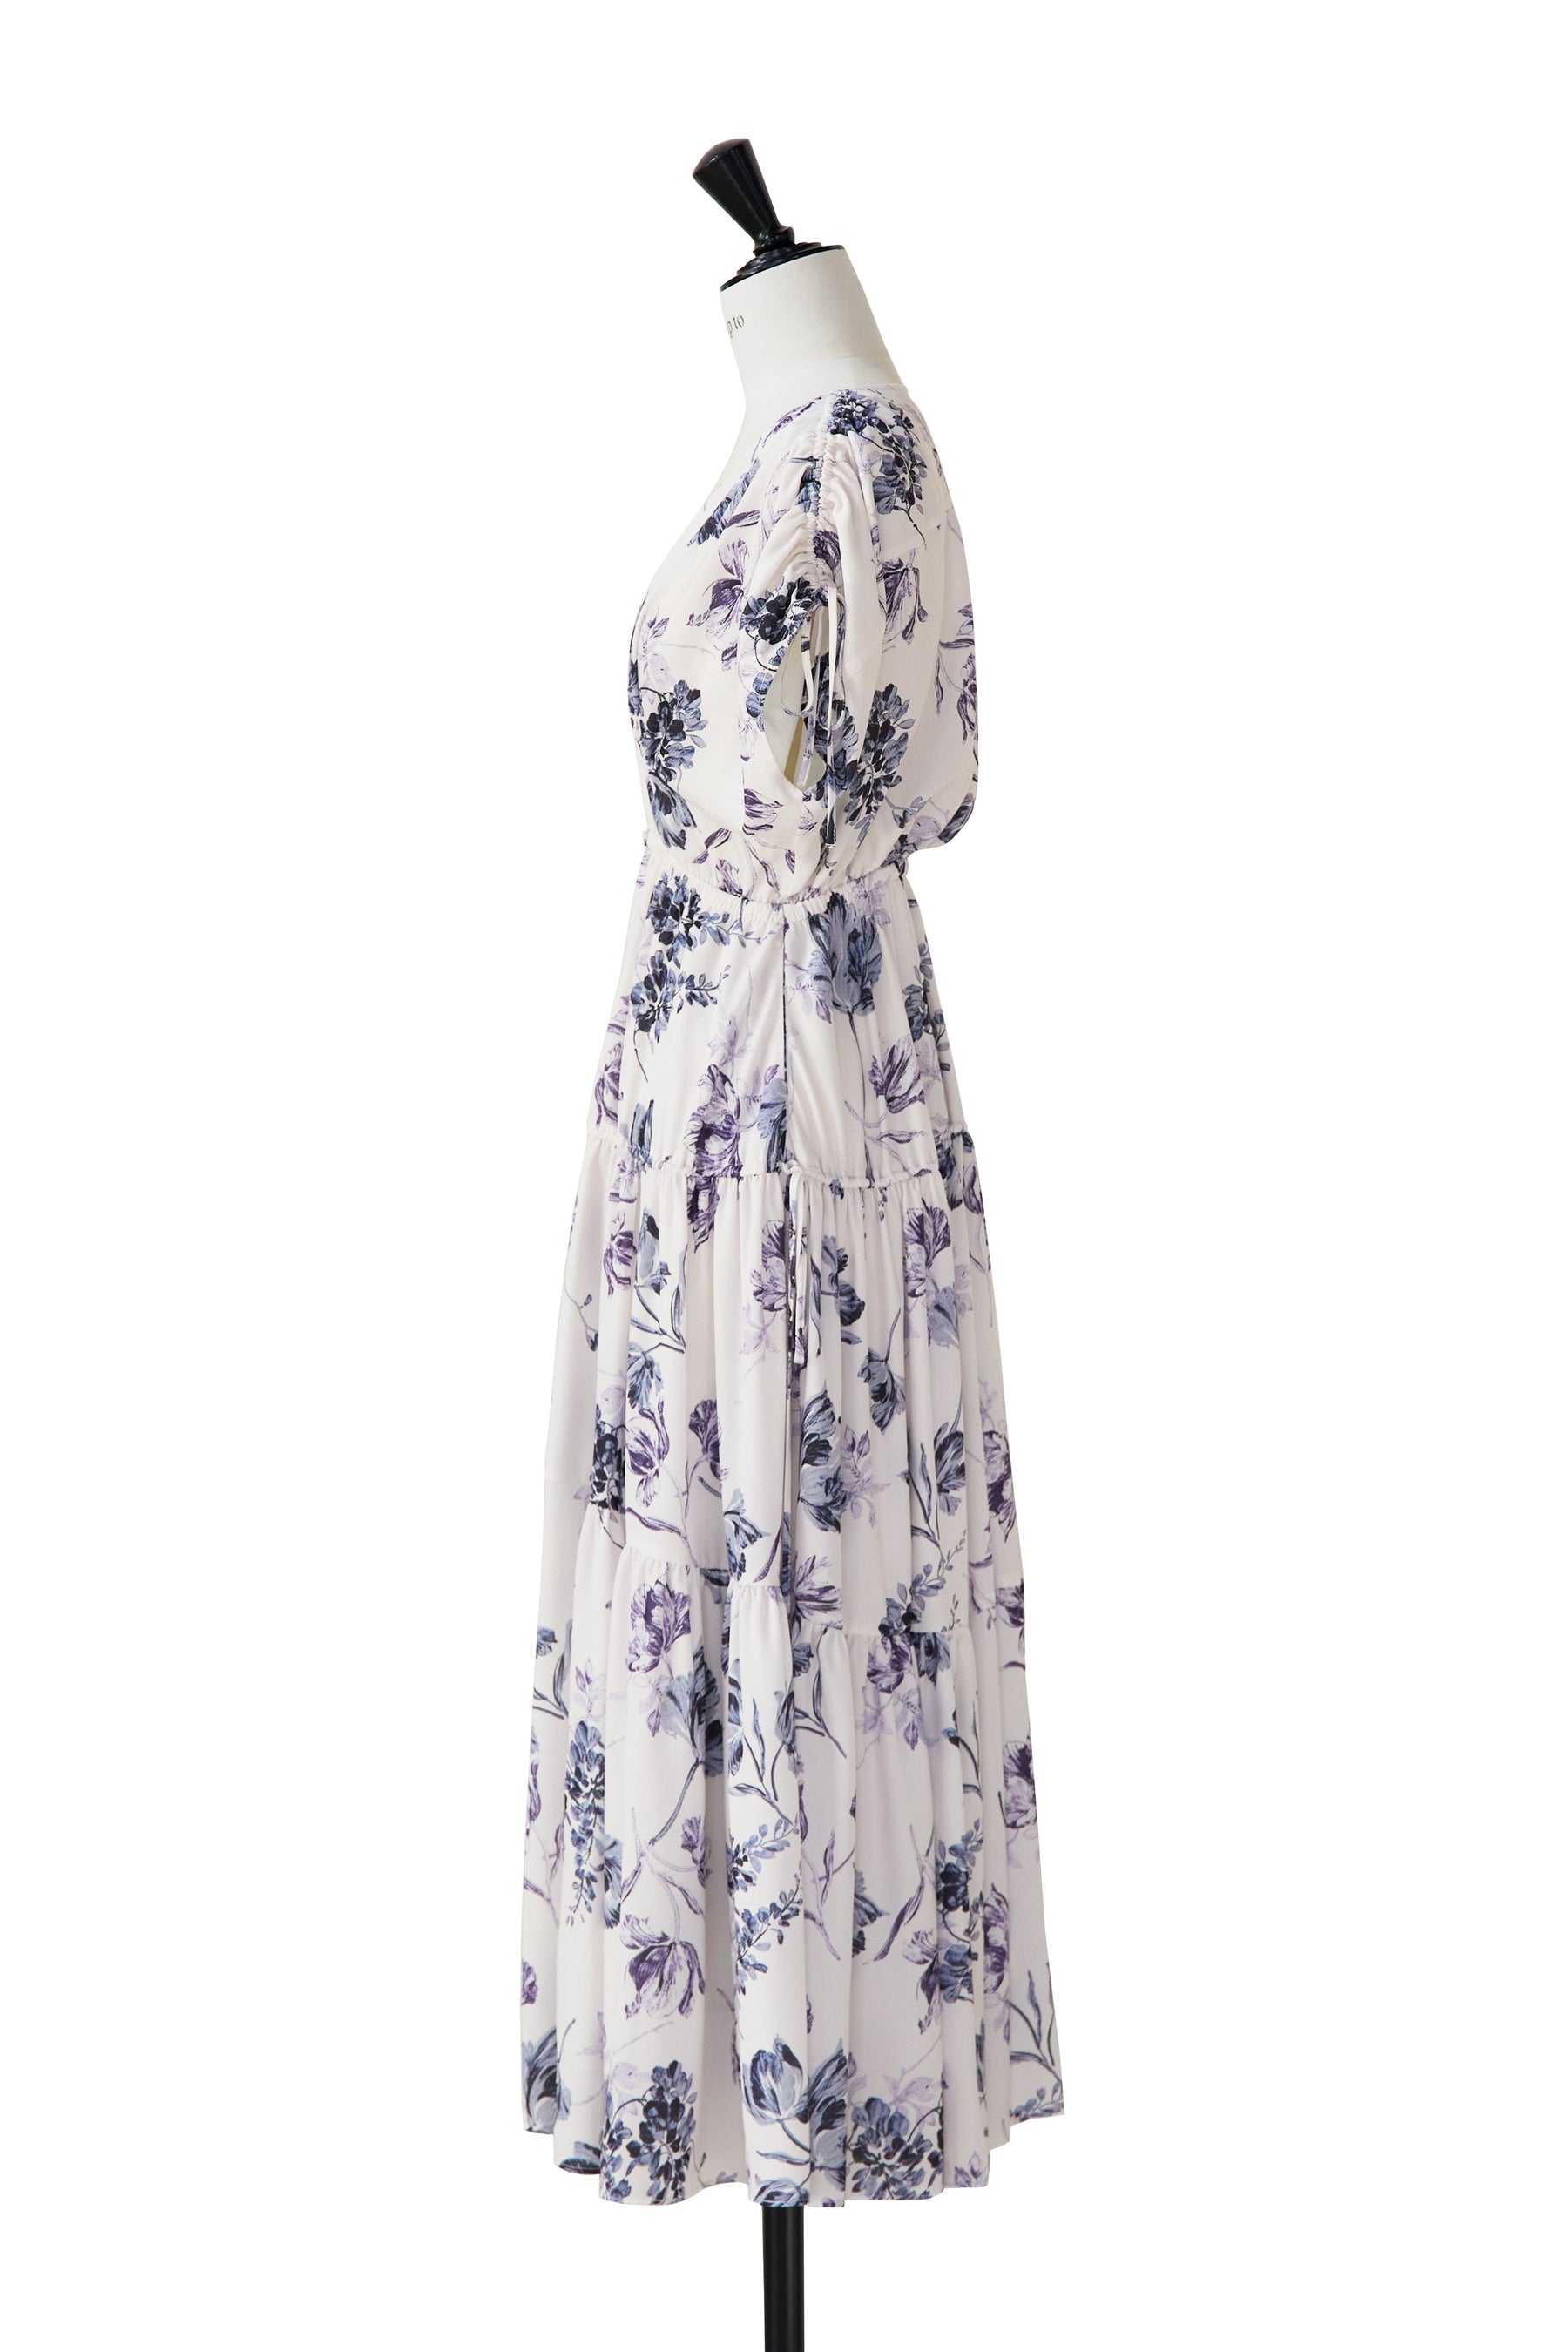 【6月上旬発送】【rich lavender】Full Of Love Long Dress